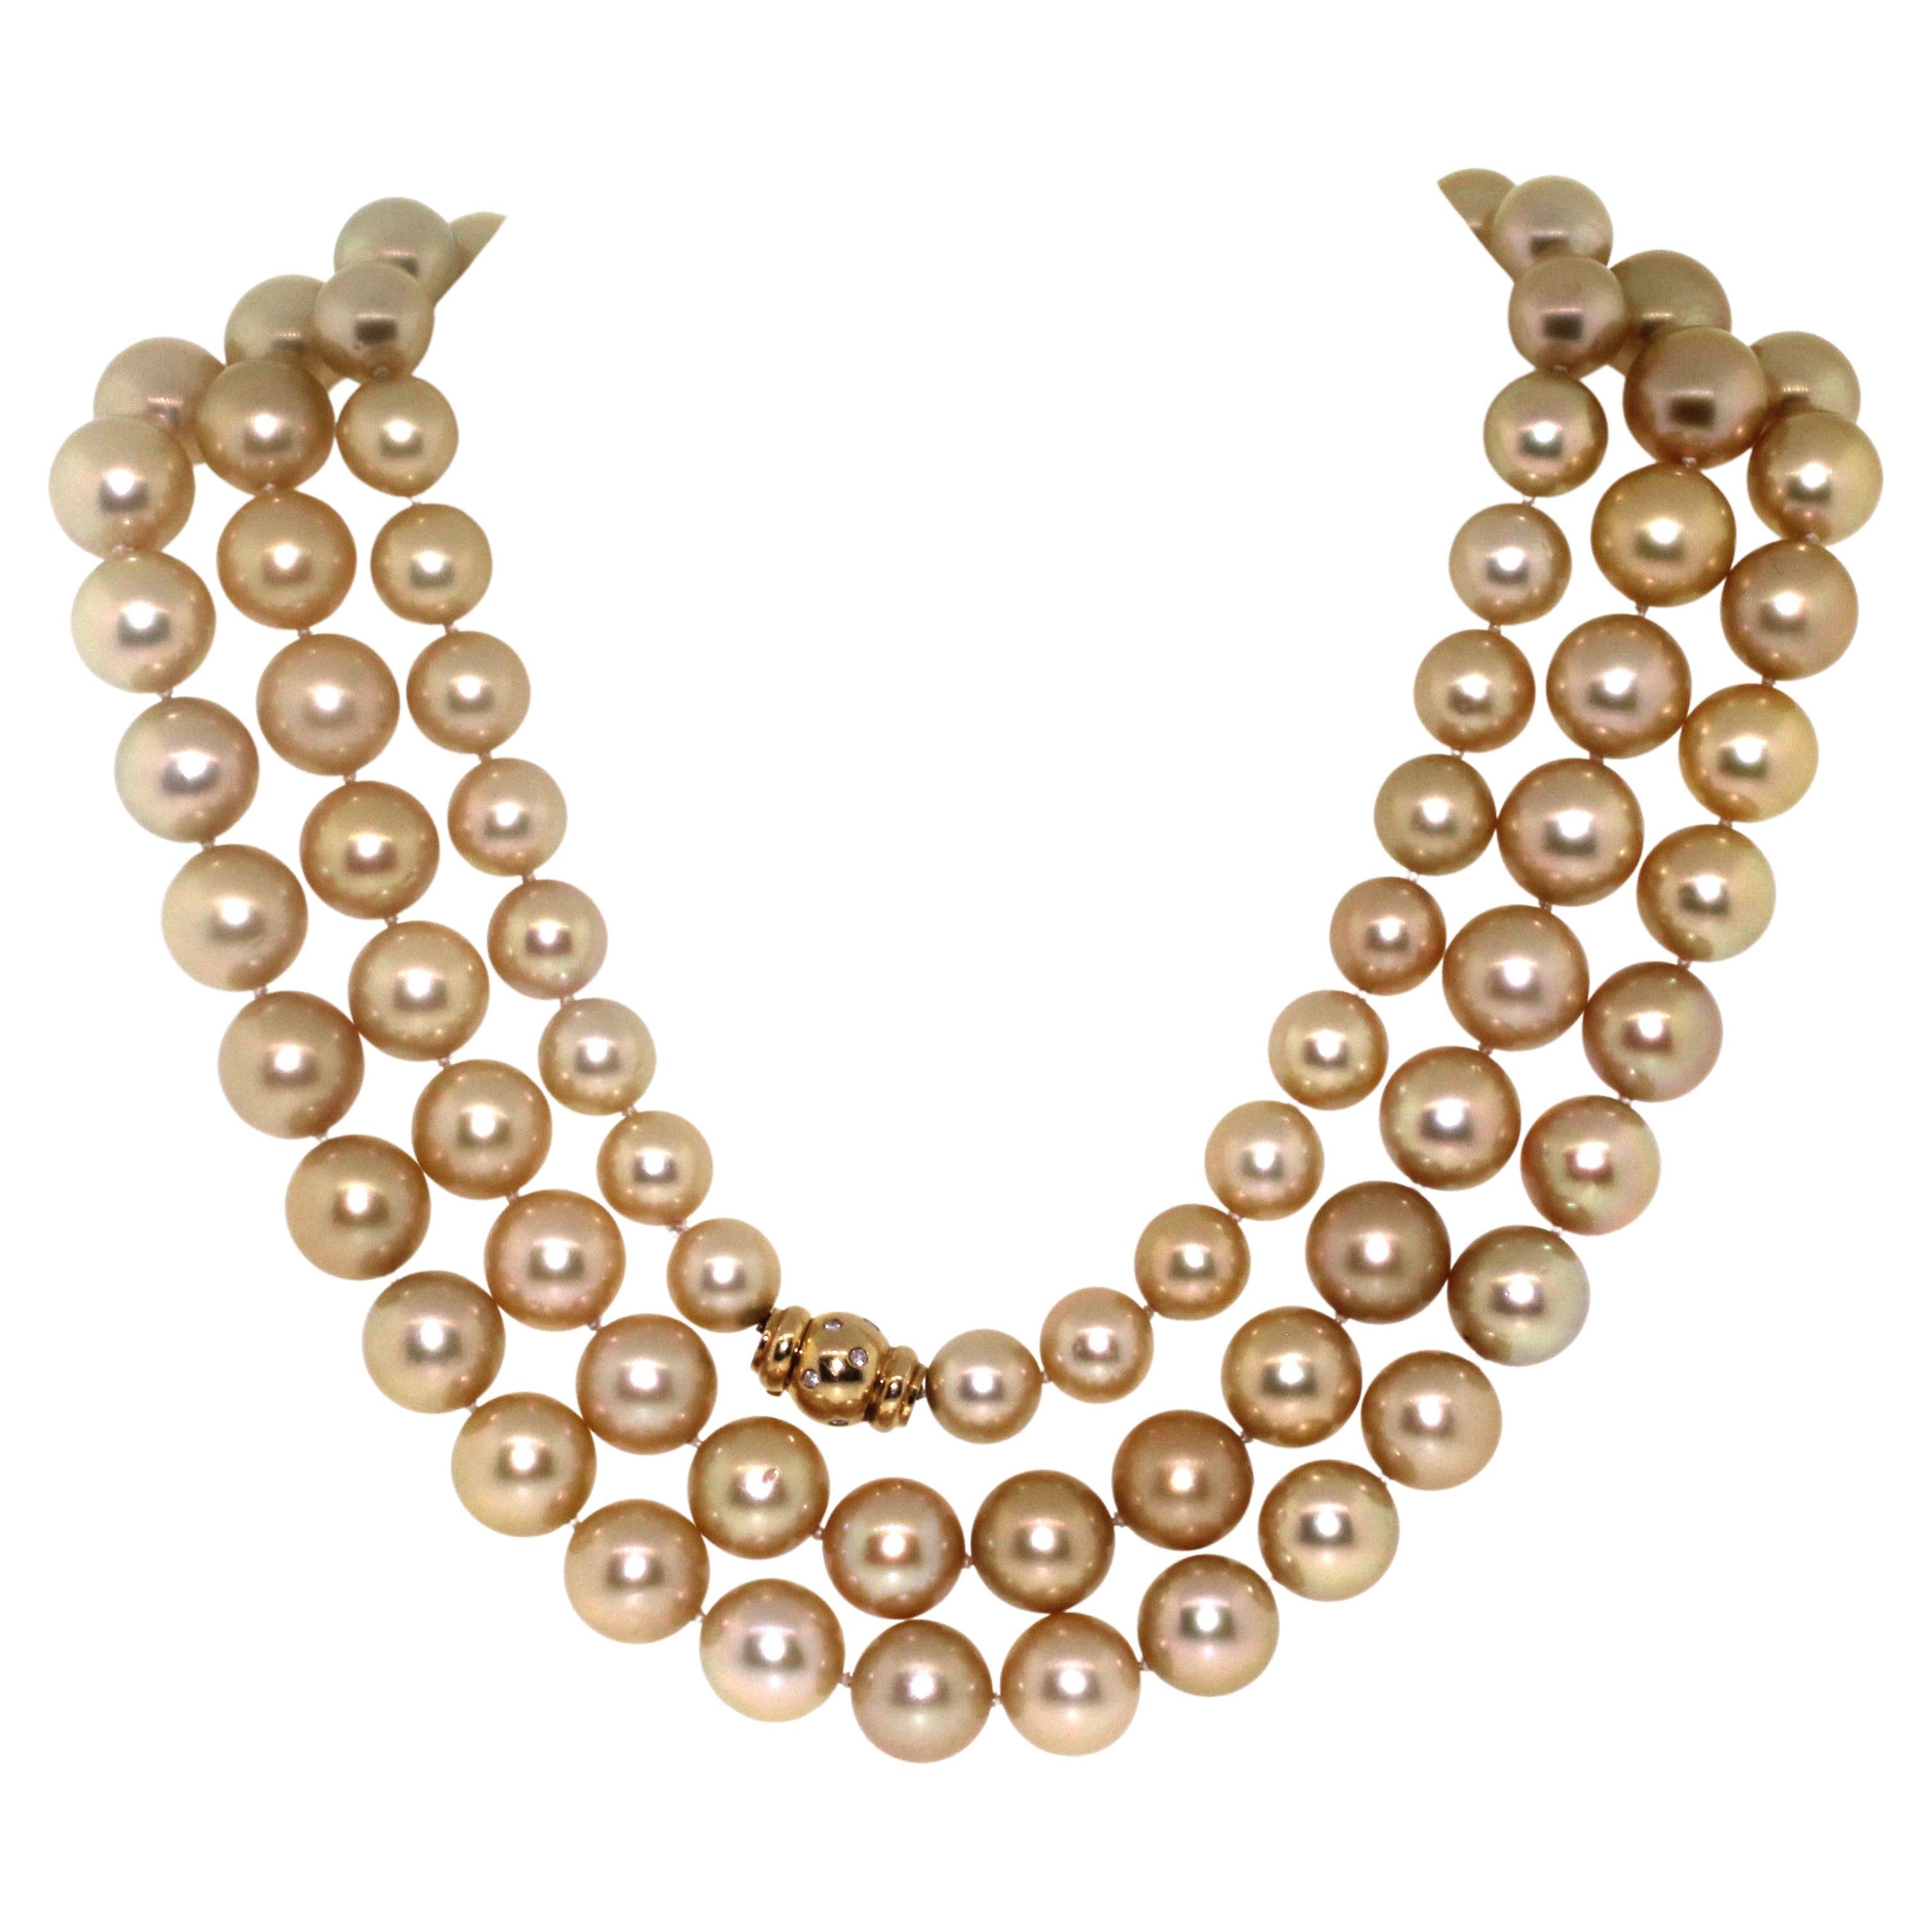 Hakimoto von Jewel Of Ocean
Empfohlener Redtail-Preis $100.000
99 Goldene Südsee Perle 10x14mm Seil Halskette 18K Diamanten Gelbgold Verschluss
50,5